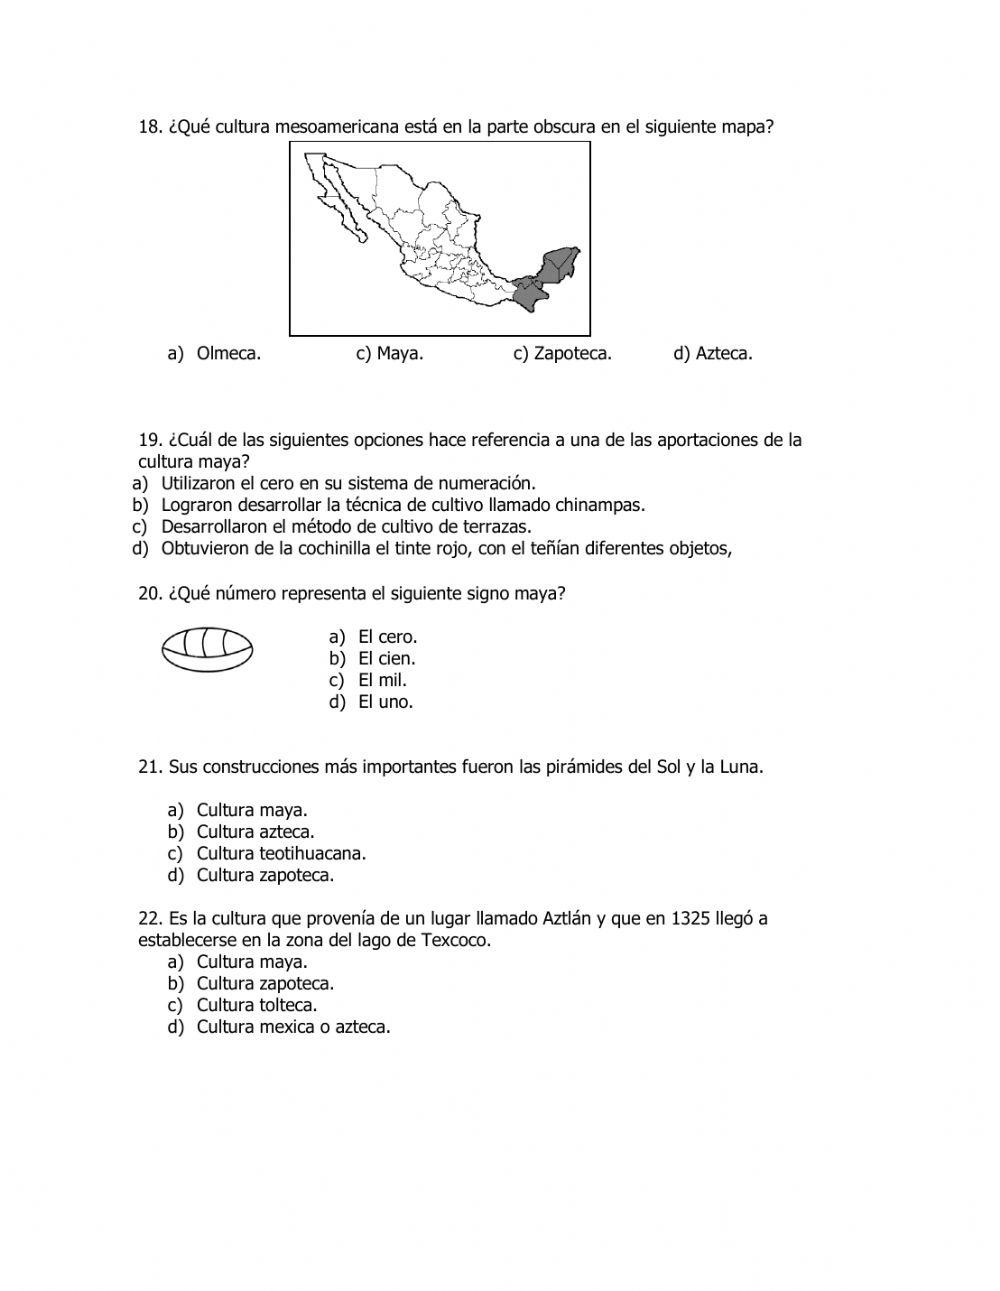 Examen bimestral de Historia.